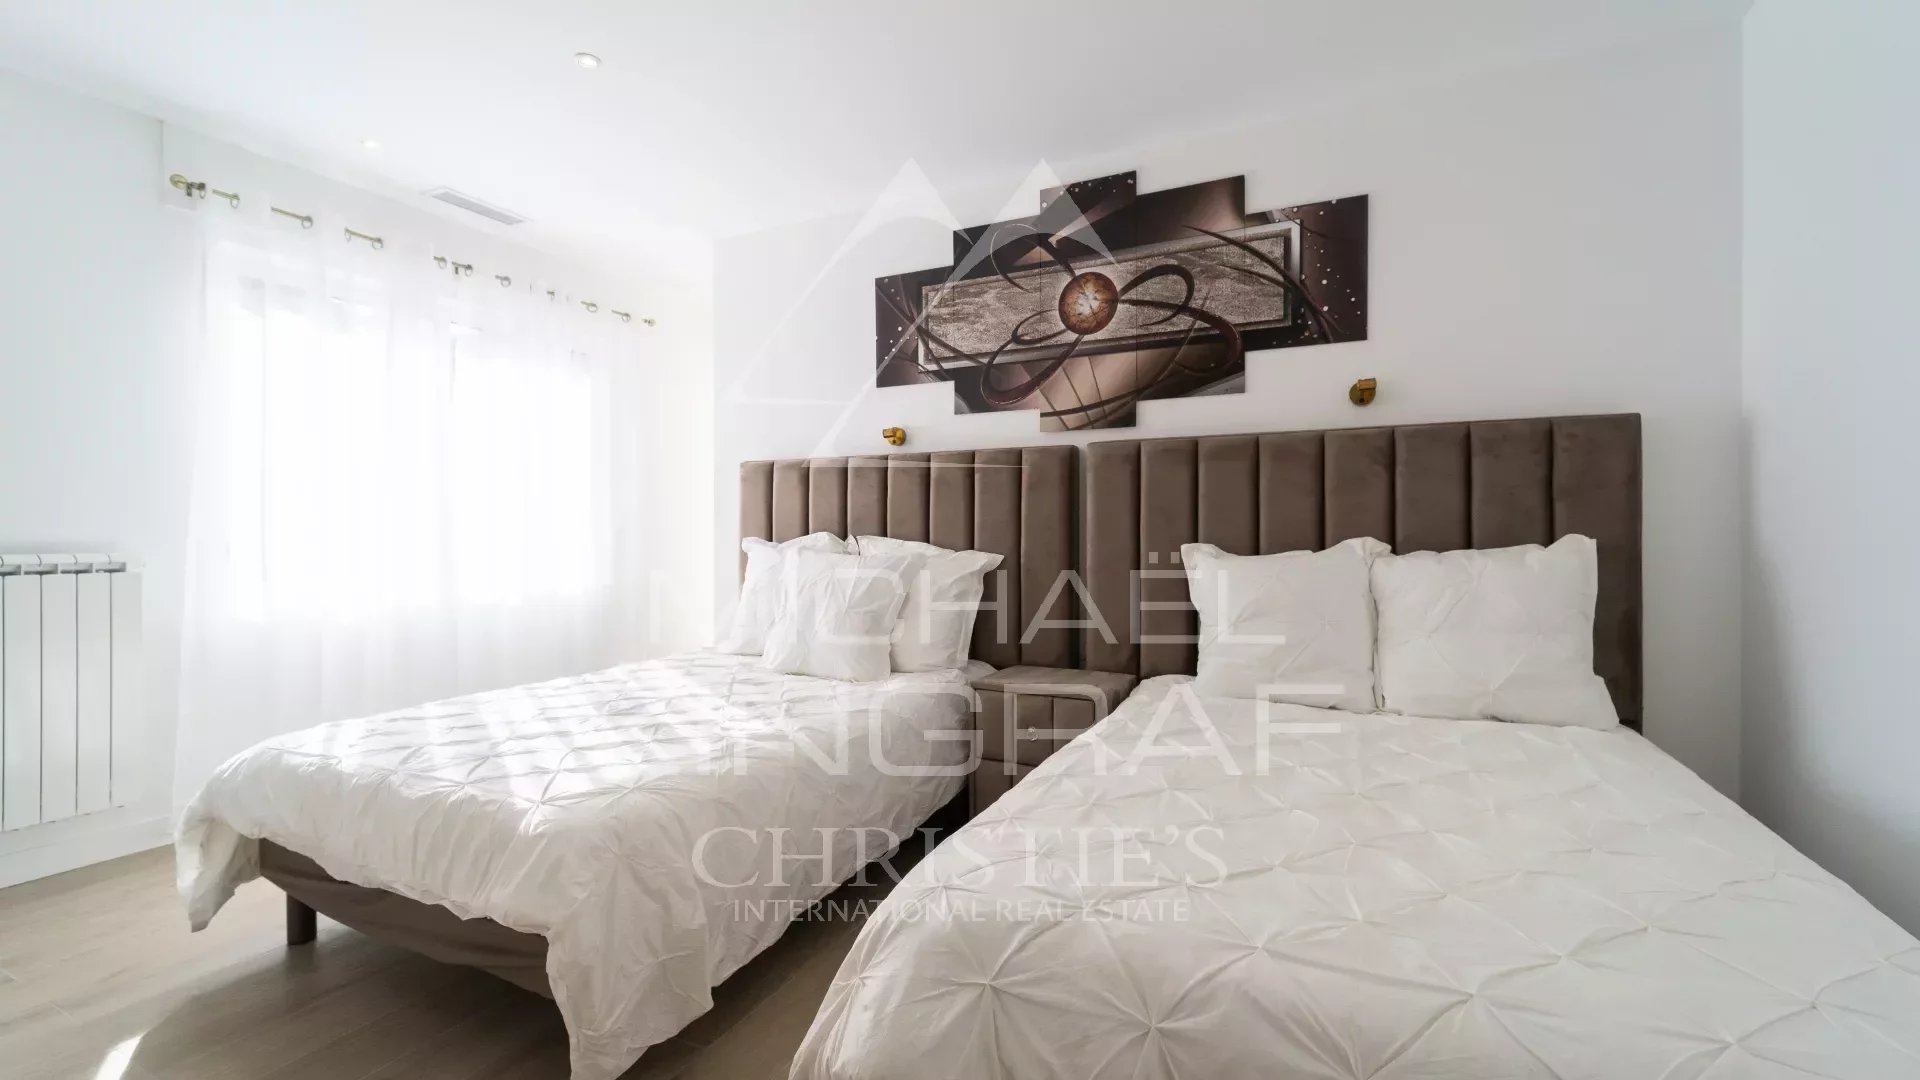 Cannes - Villa mit 6 Schlafzimmern in der Nähe der Strände